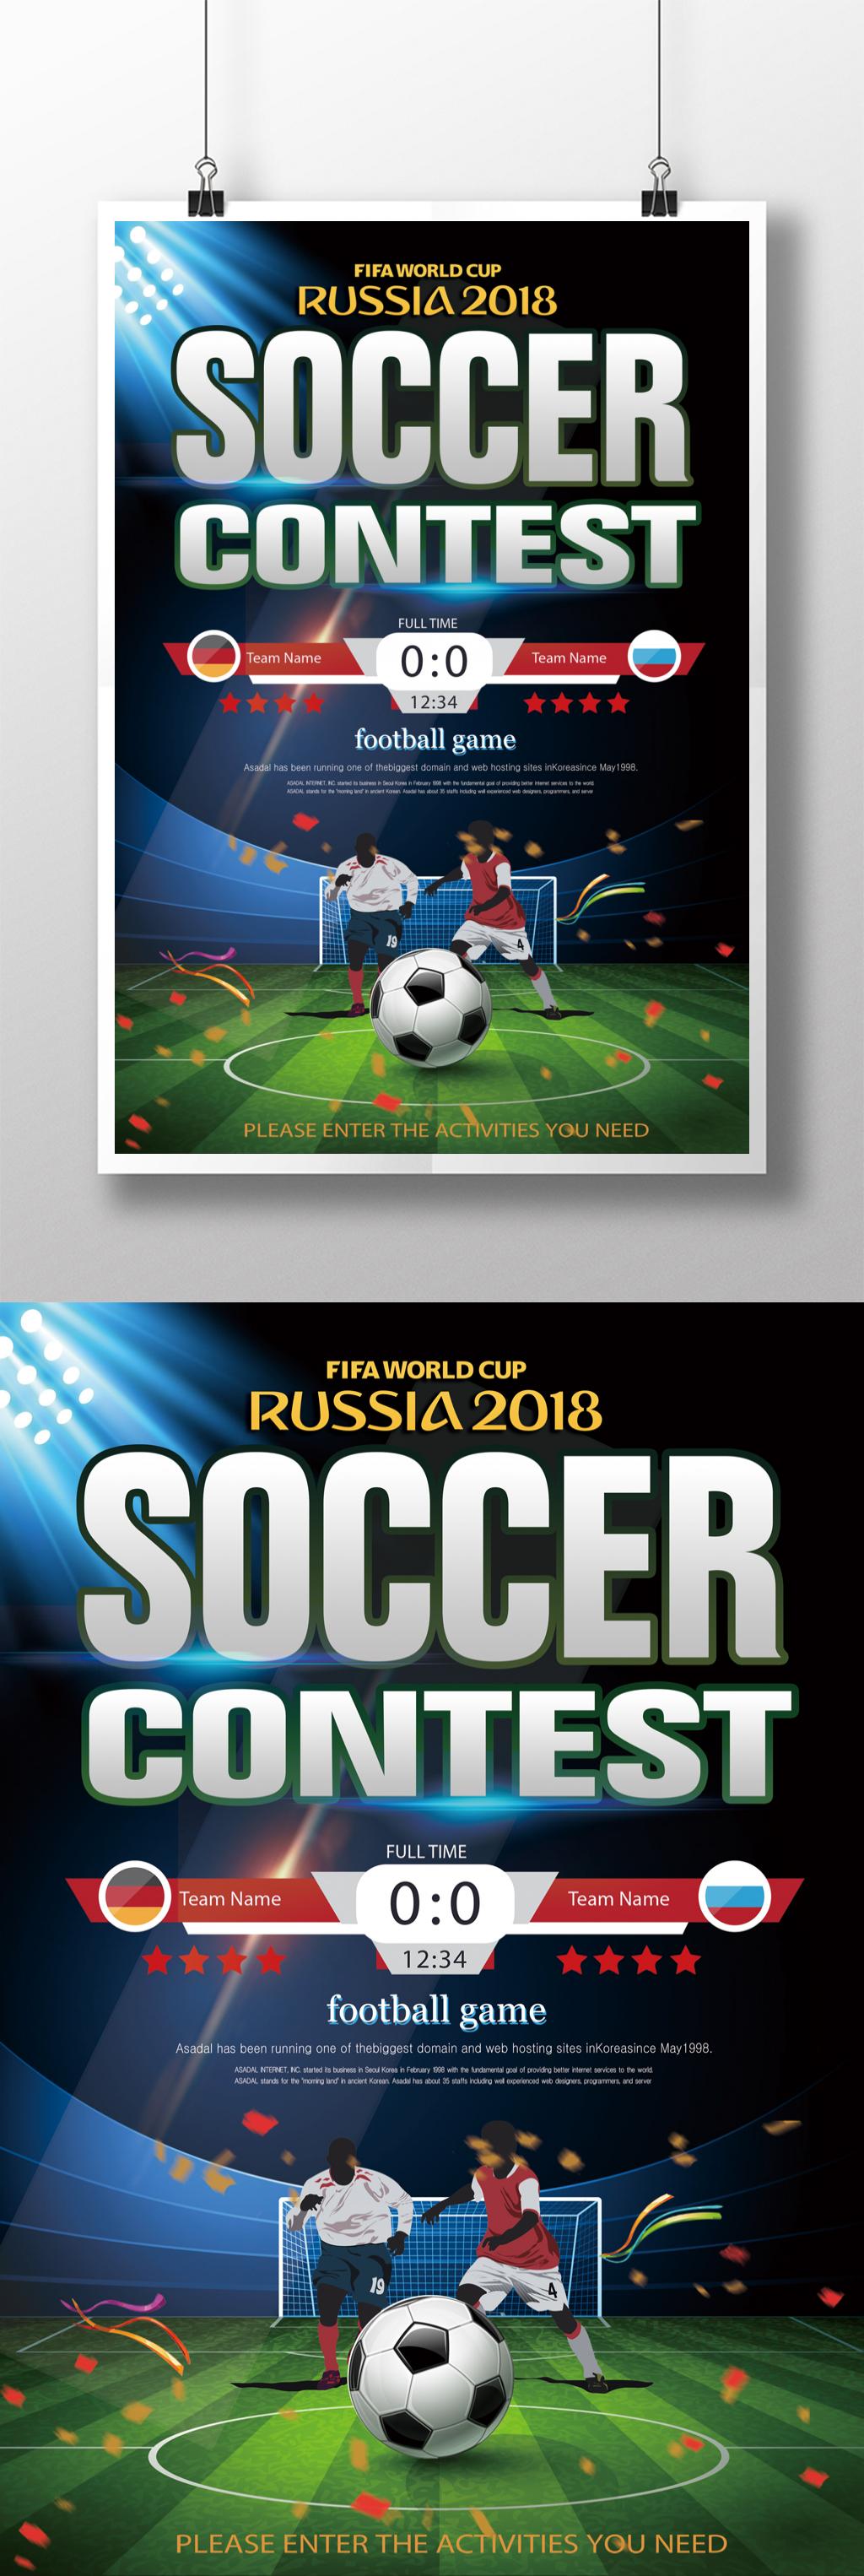 Template Poster Sepakbola Olahraga Bule Sederhana Untuk Diunduh Gratis